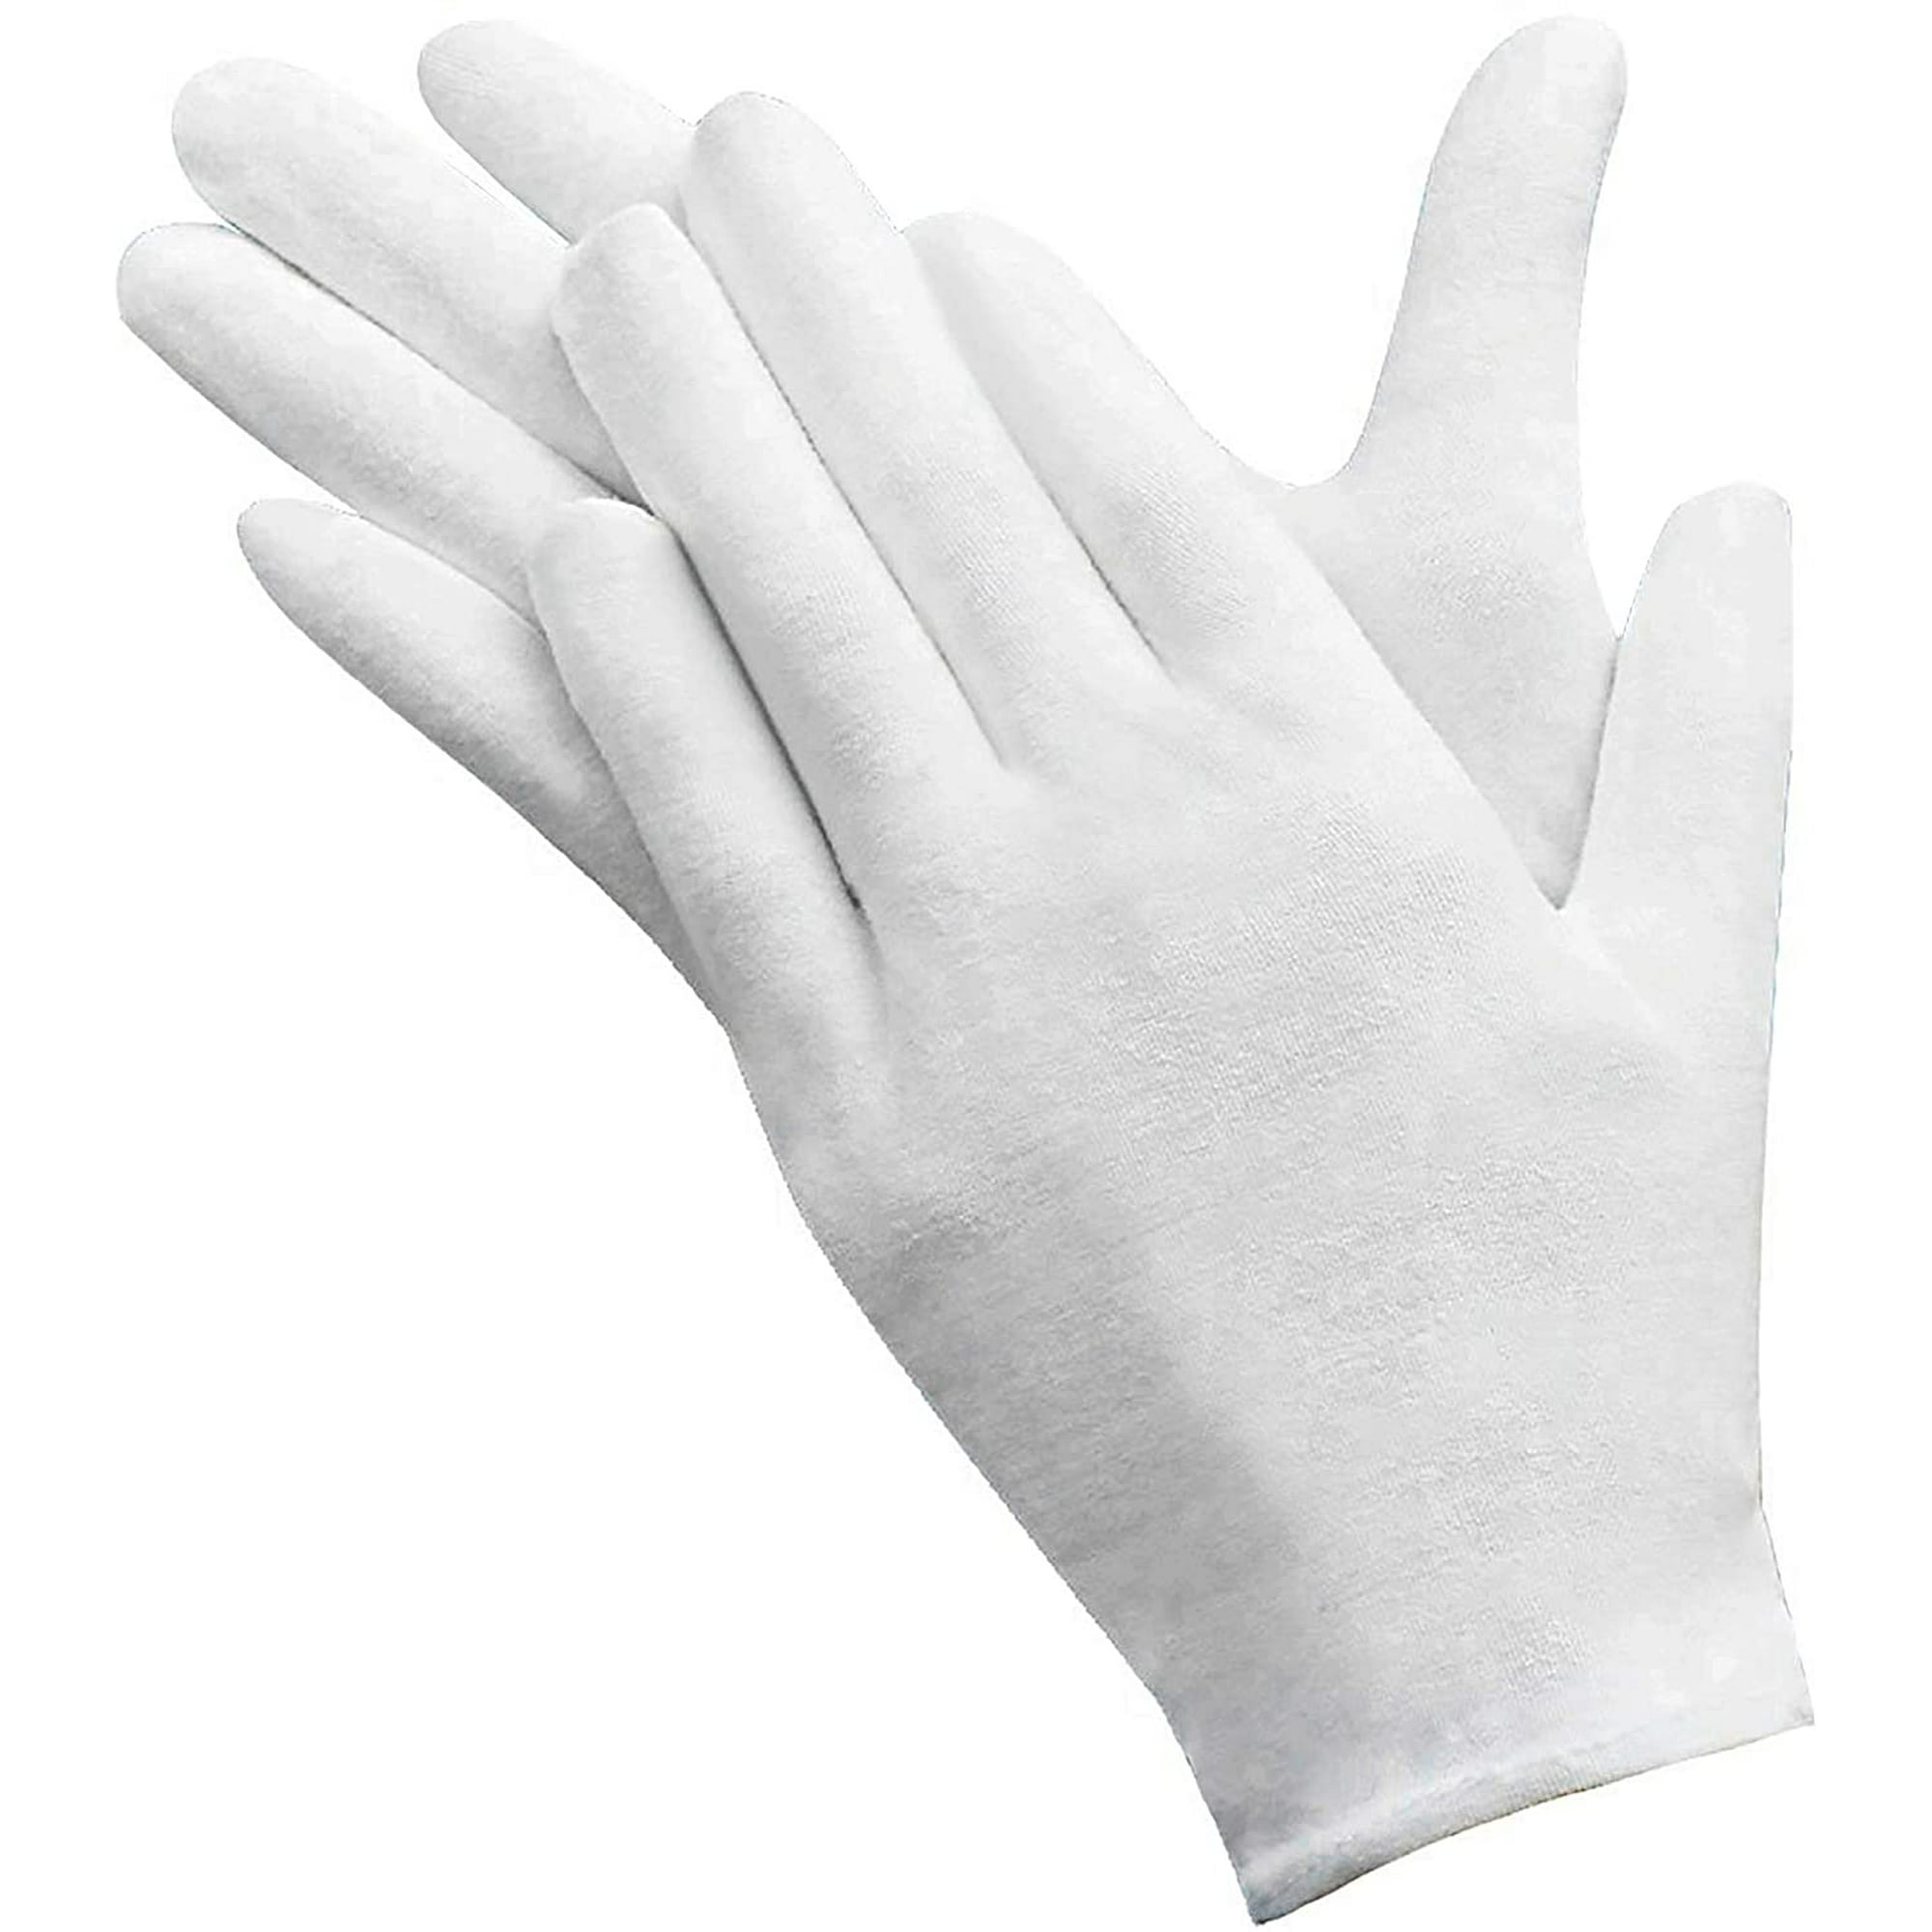 5 pares de guantes blancos de algodón - talla 9